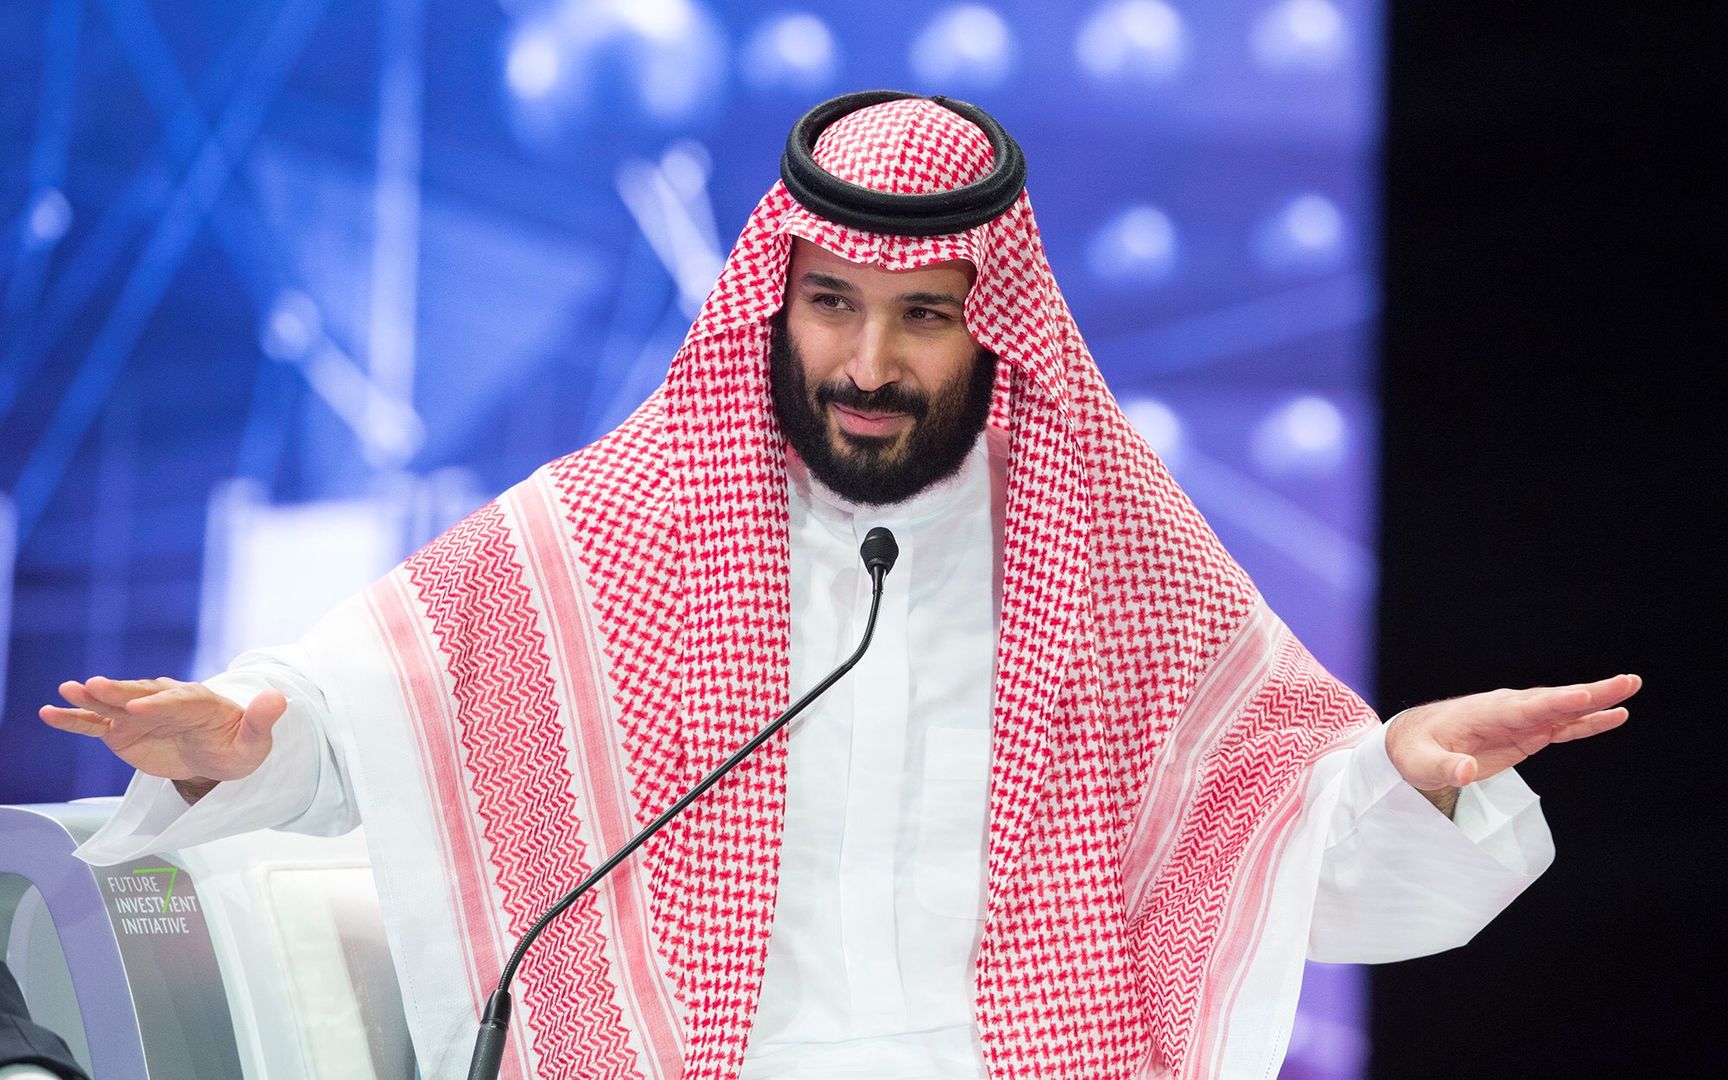 Tak wygląda przyszłość? Arabski książę zapowiada "rewolucję dla ludzkości"